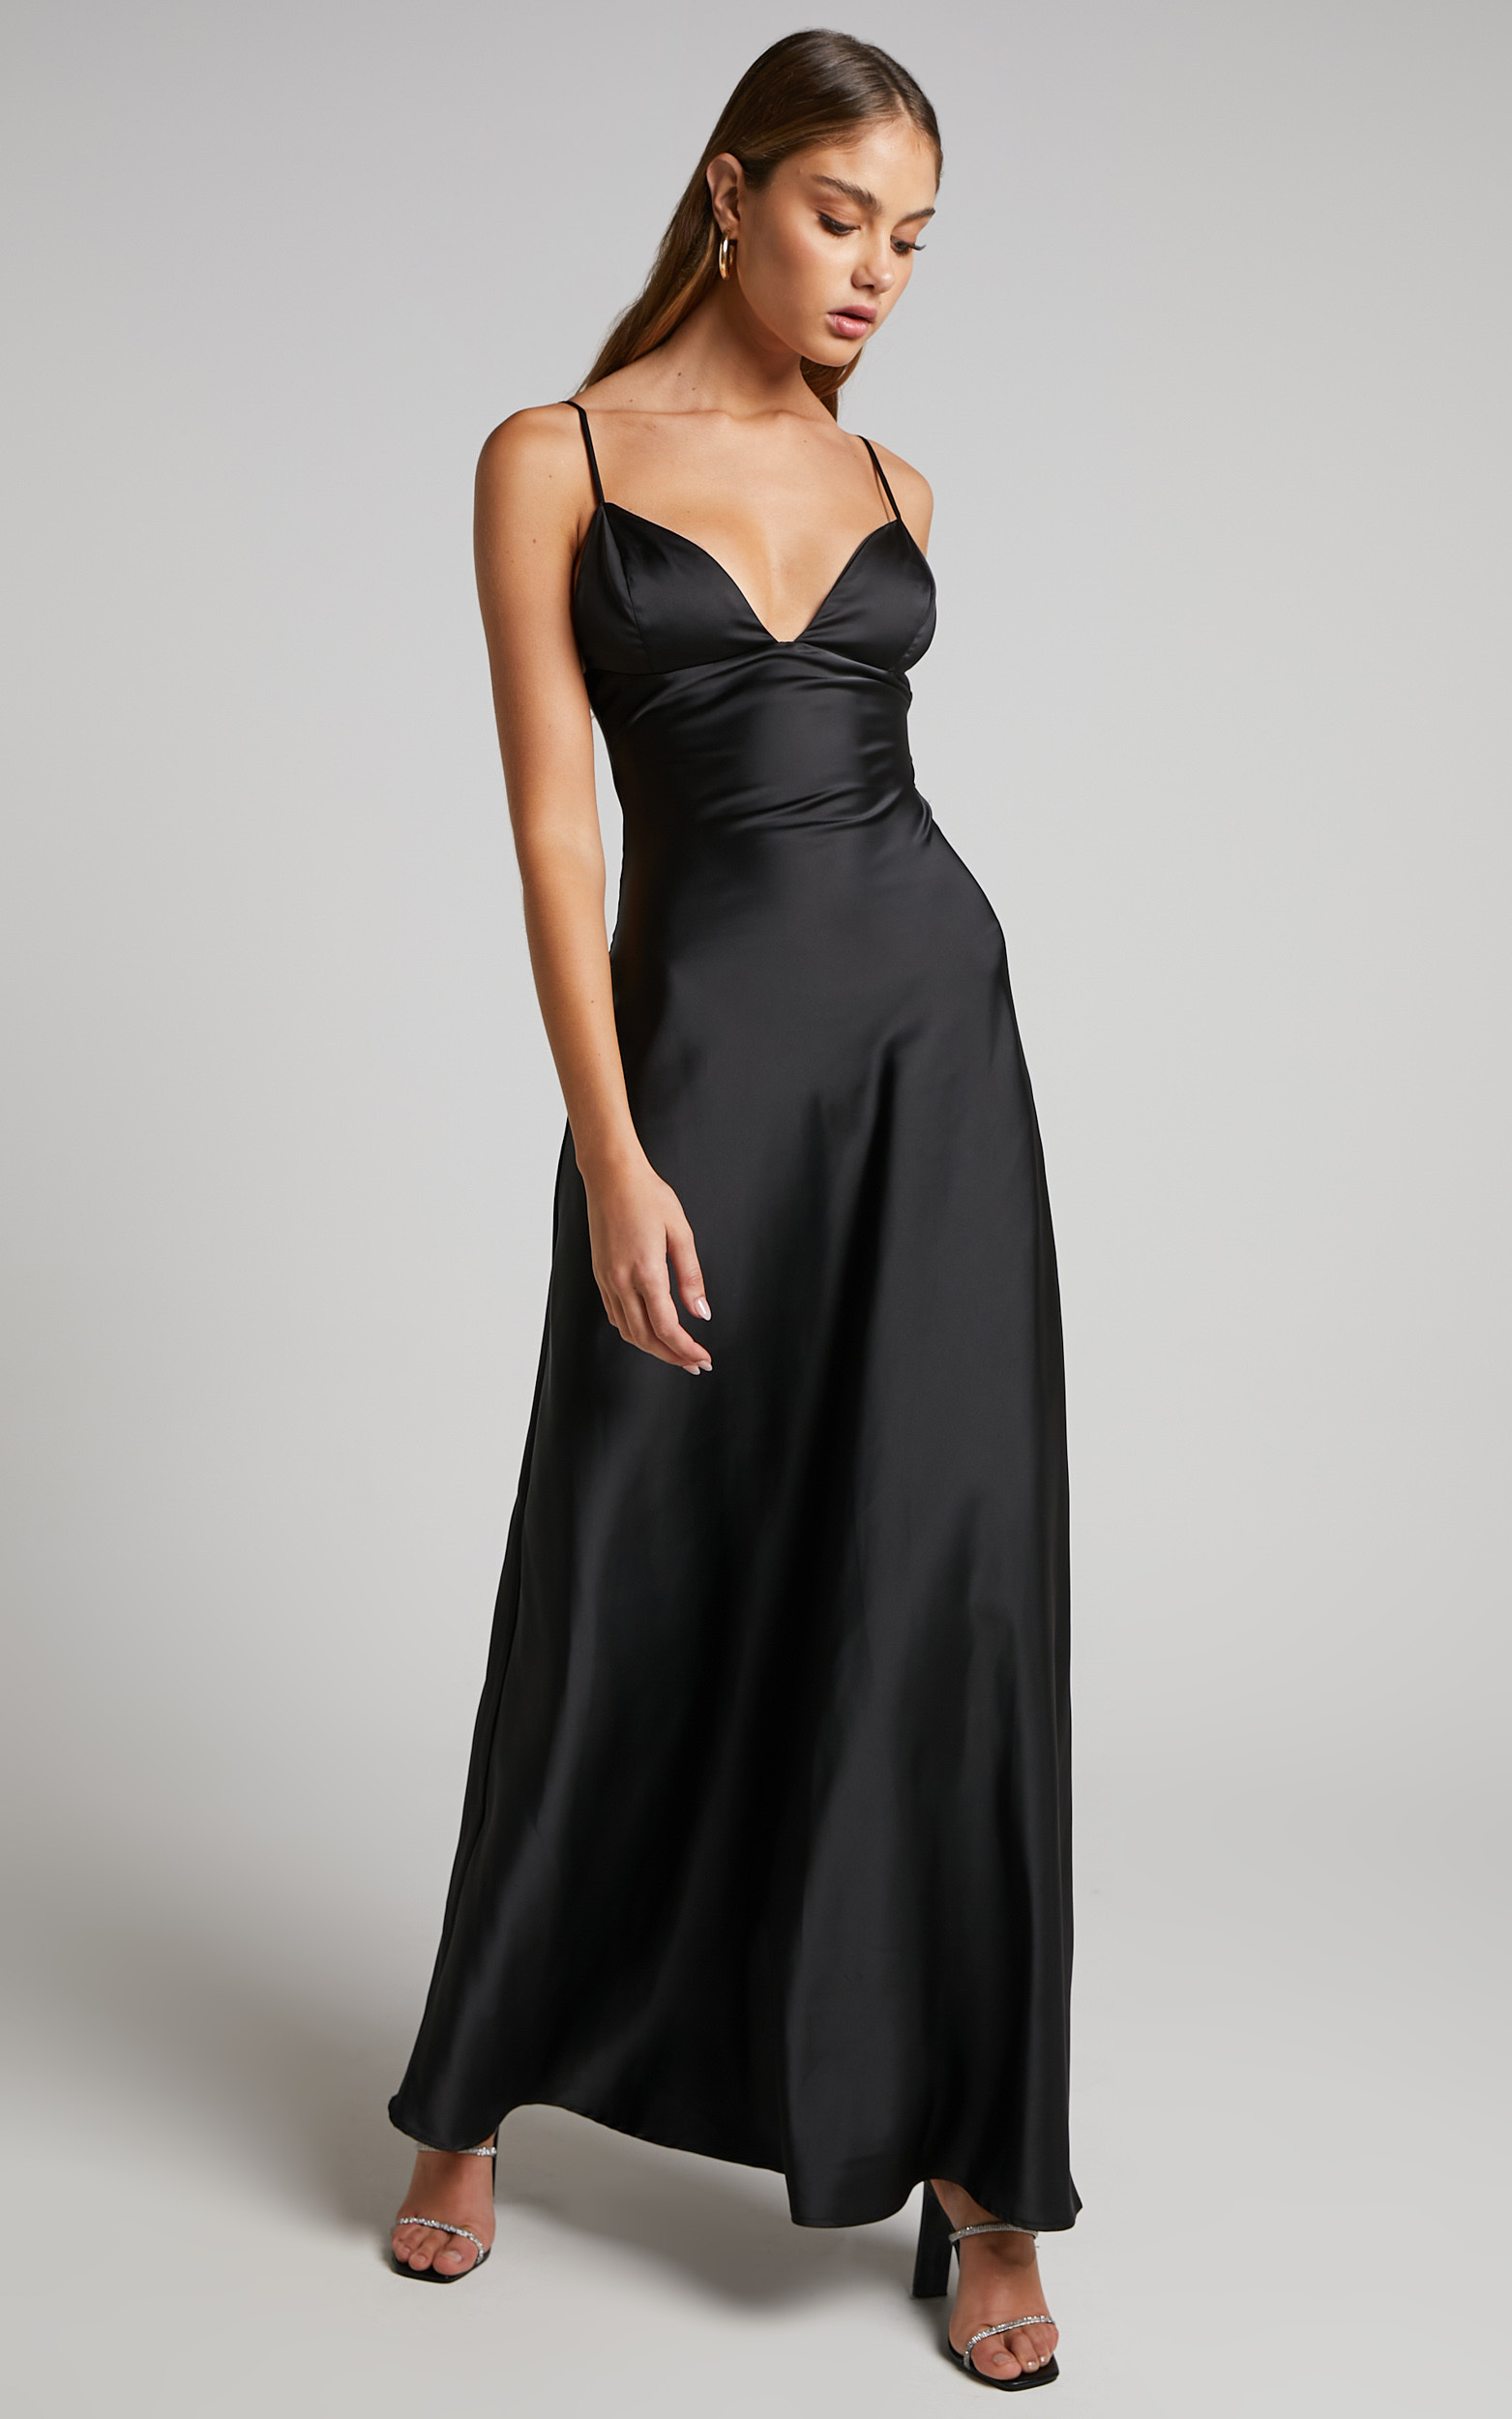 Cariela Plunge Neck Satin Maxi Dress in Black - 04, BLK1, hi-res image number null